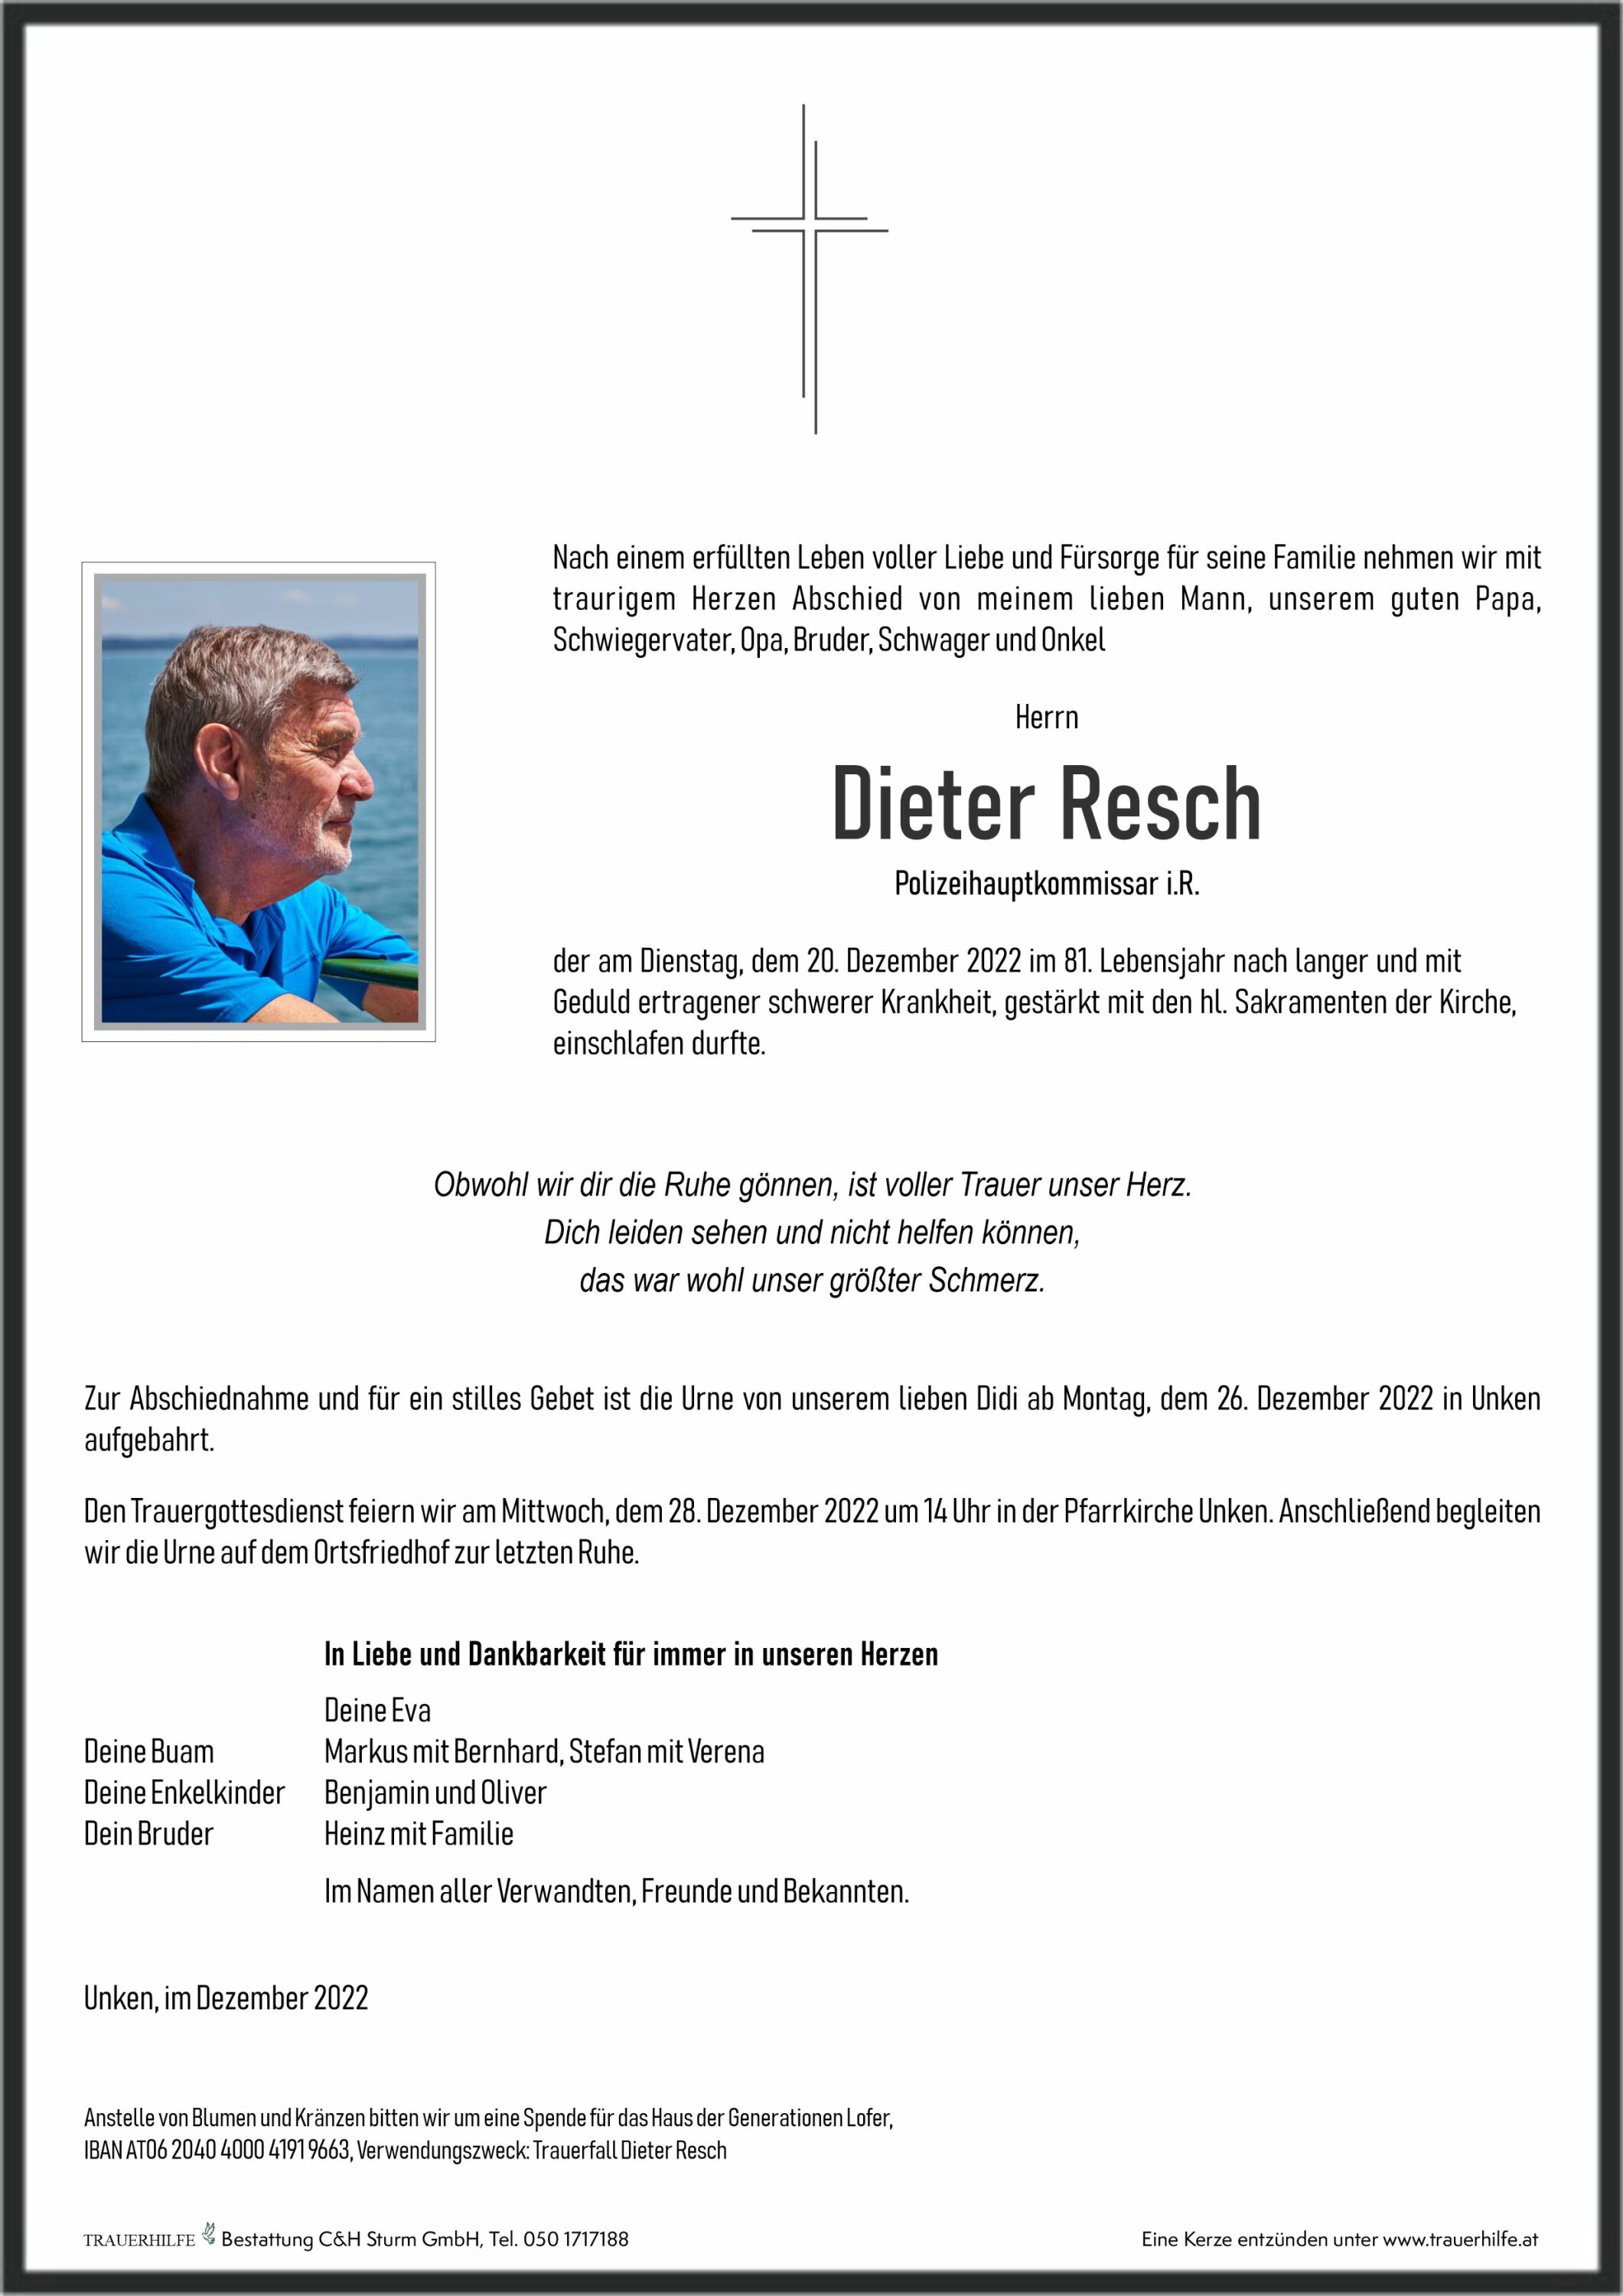 Dieter Resch